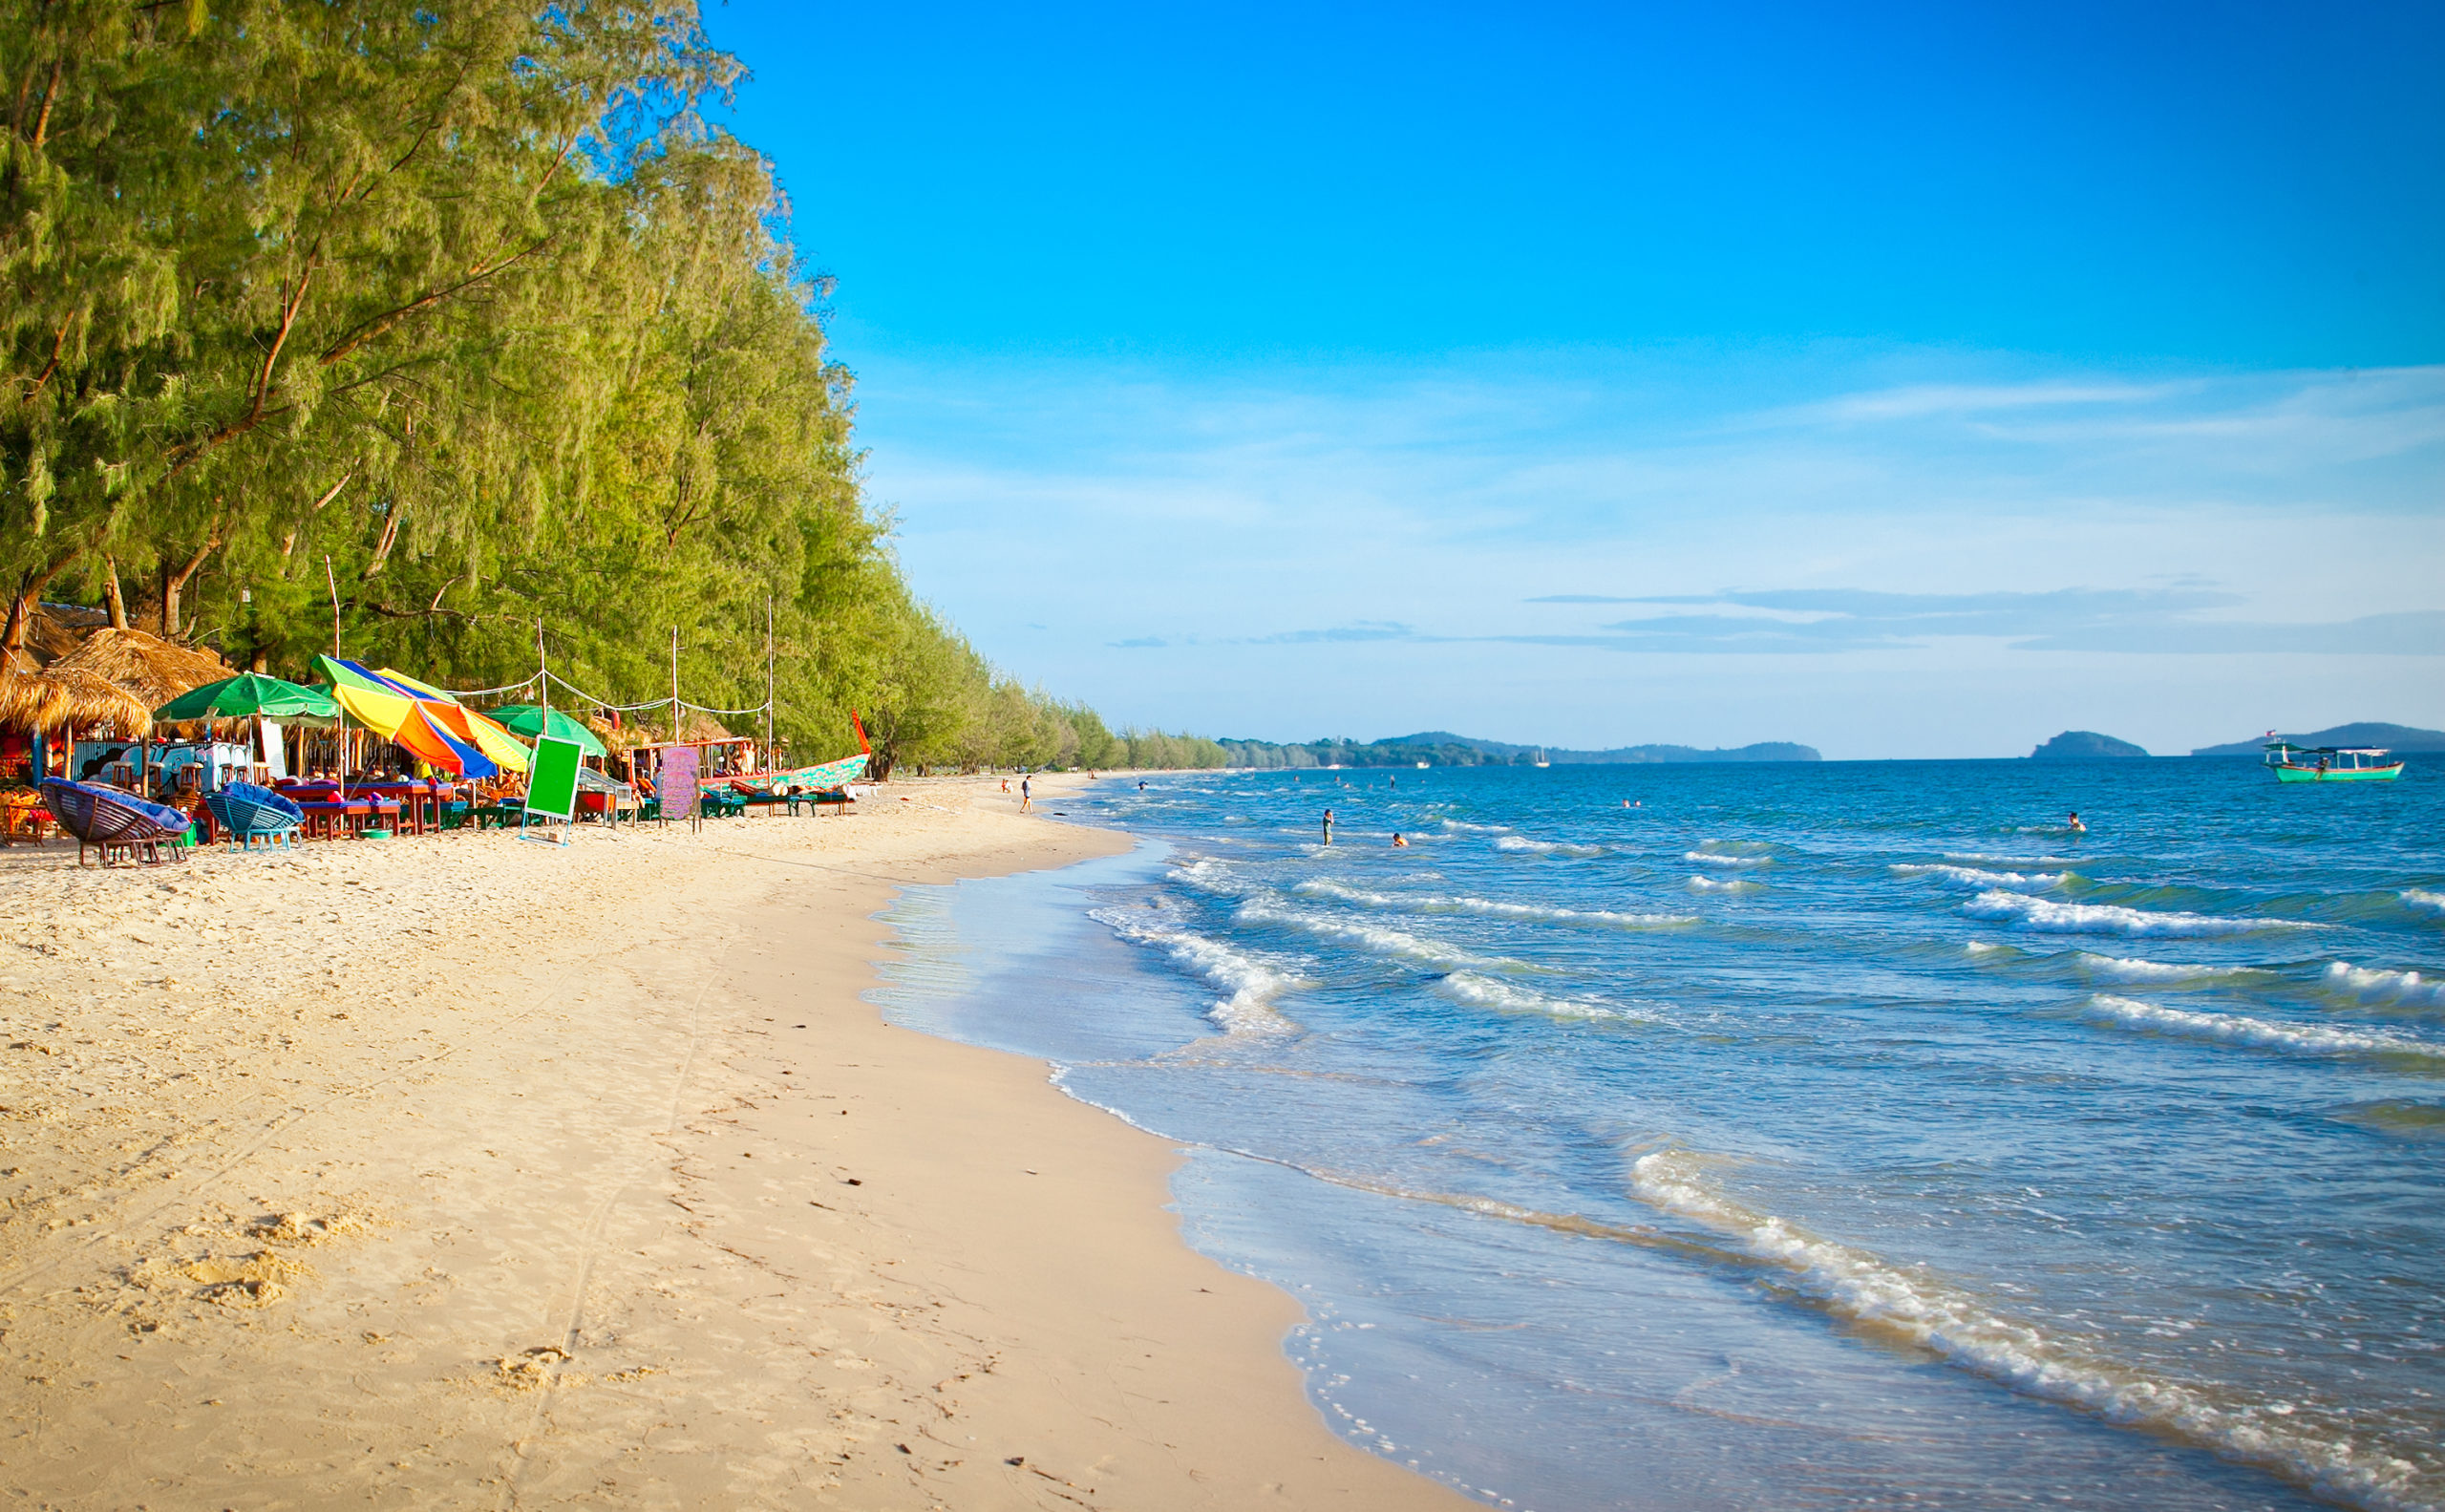 Cambodia Beach Guide | A 2021 Update